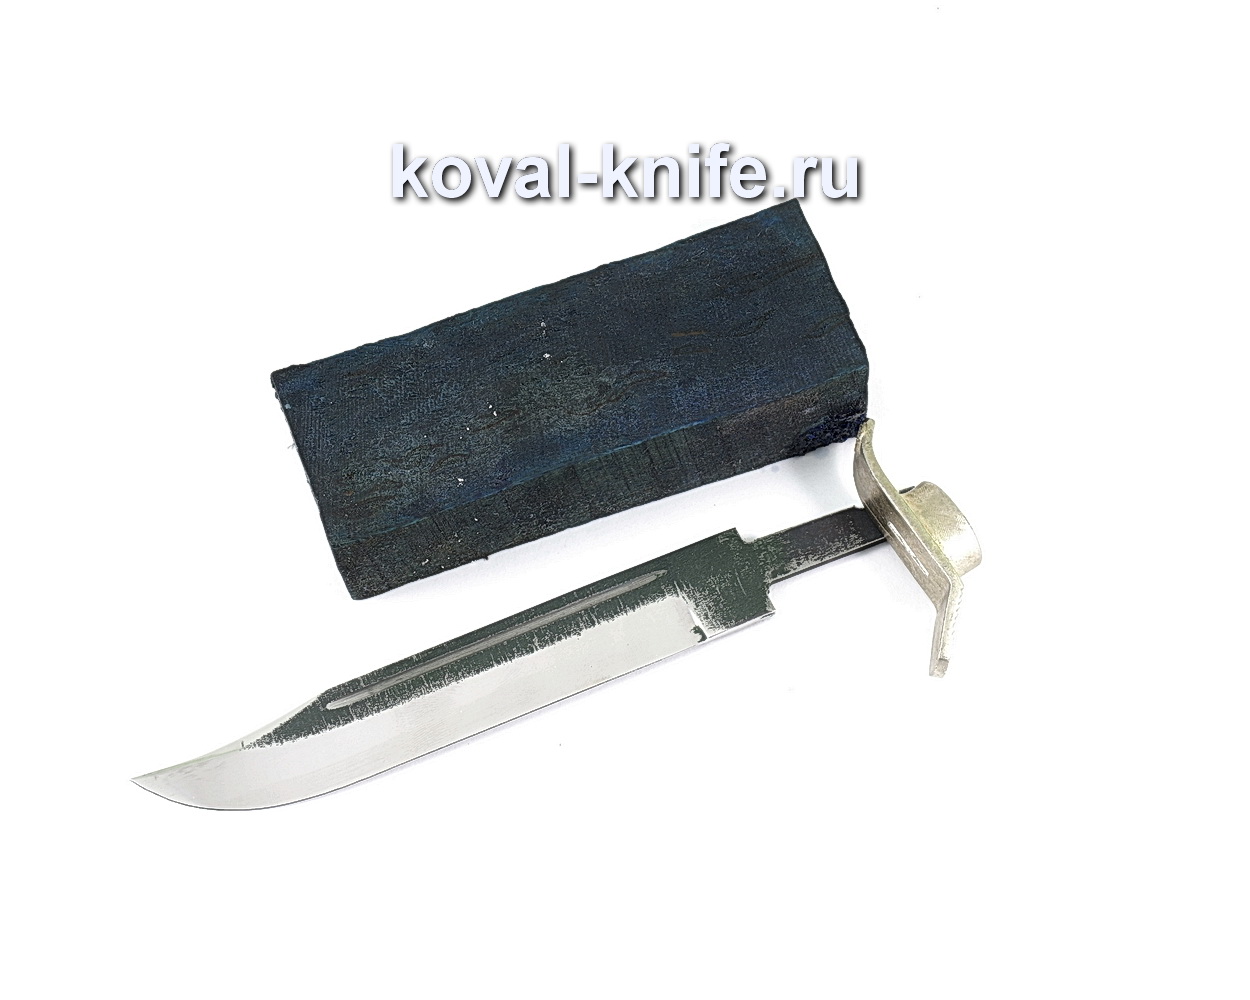 Комплект для ножа НР-40 5 (клинок кованая 110х18 3,5мм, литье 1шт., граб брусок)